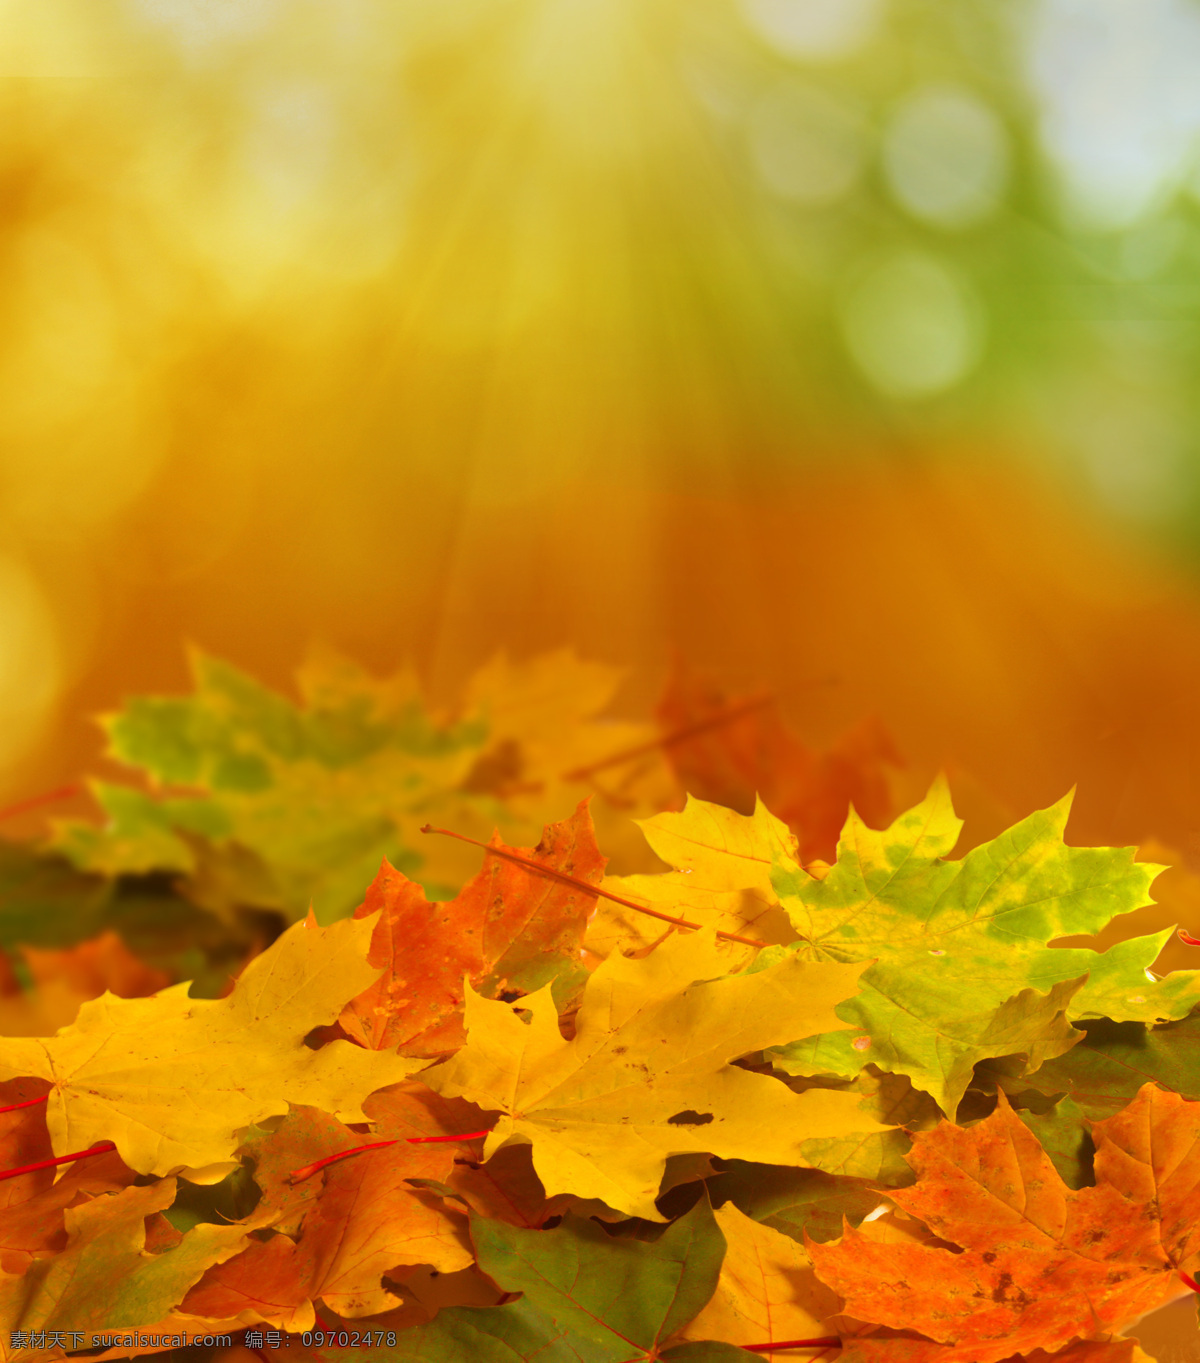 遍地 枫叶 秋天落叶 叶子 叶片 秋天主题 美丽自然风景 花草树木 生物世界